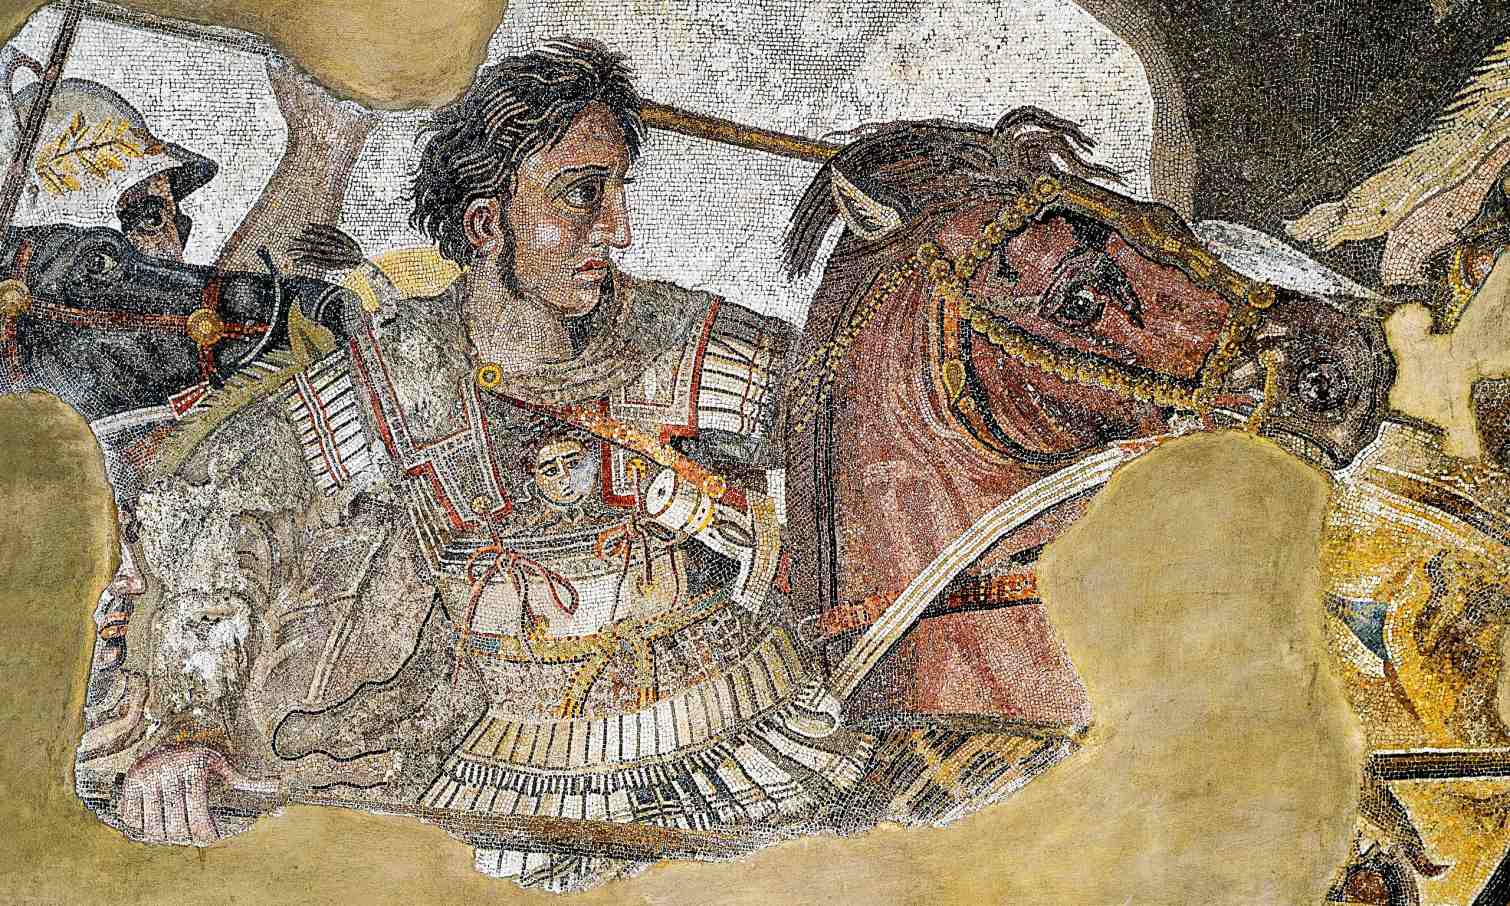 Alexander Đại đế có gặp 'rồng' ở Ấn Độ không? 1